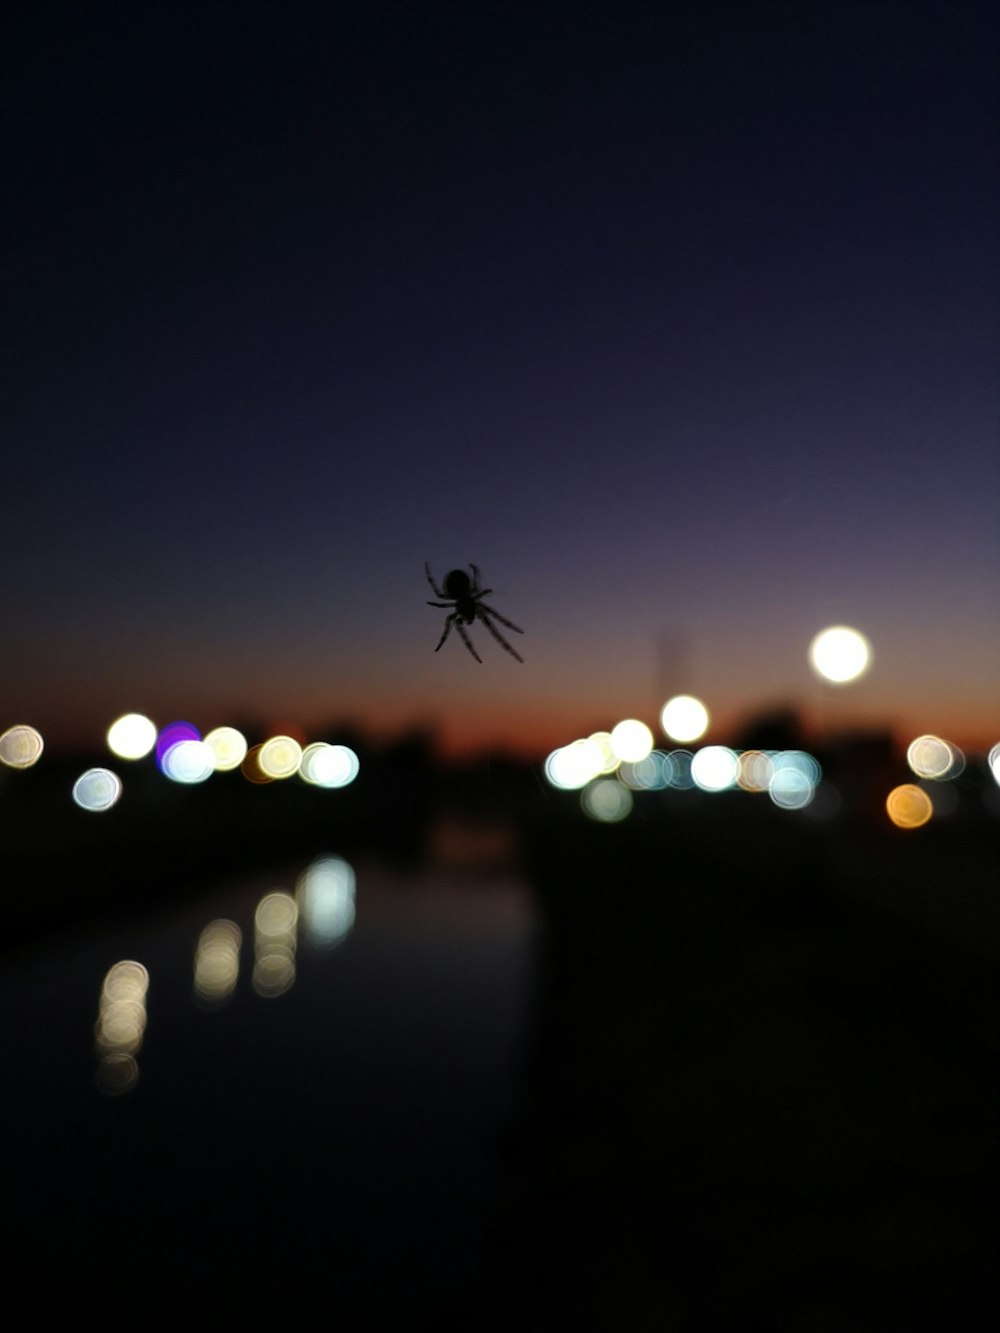 Una araña colgando del costado de un edificio por la noche